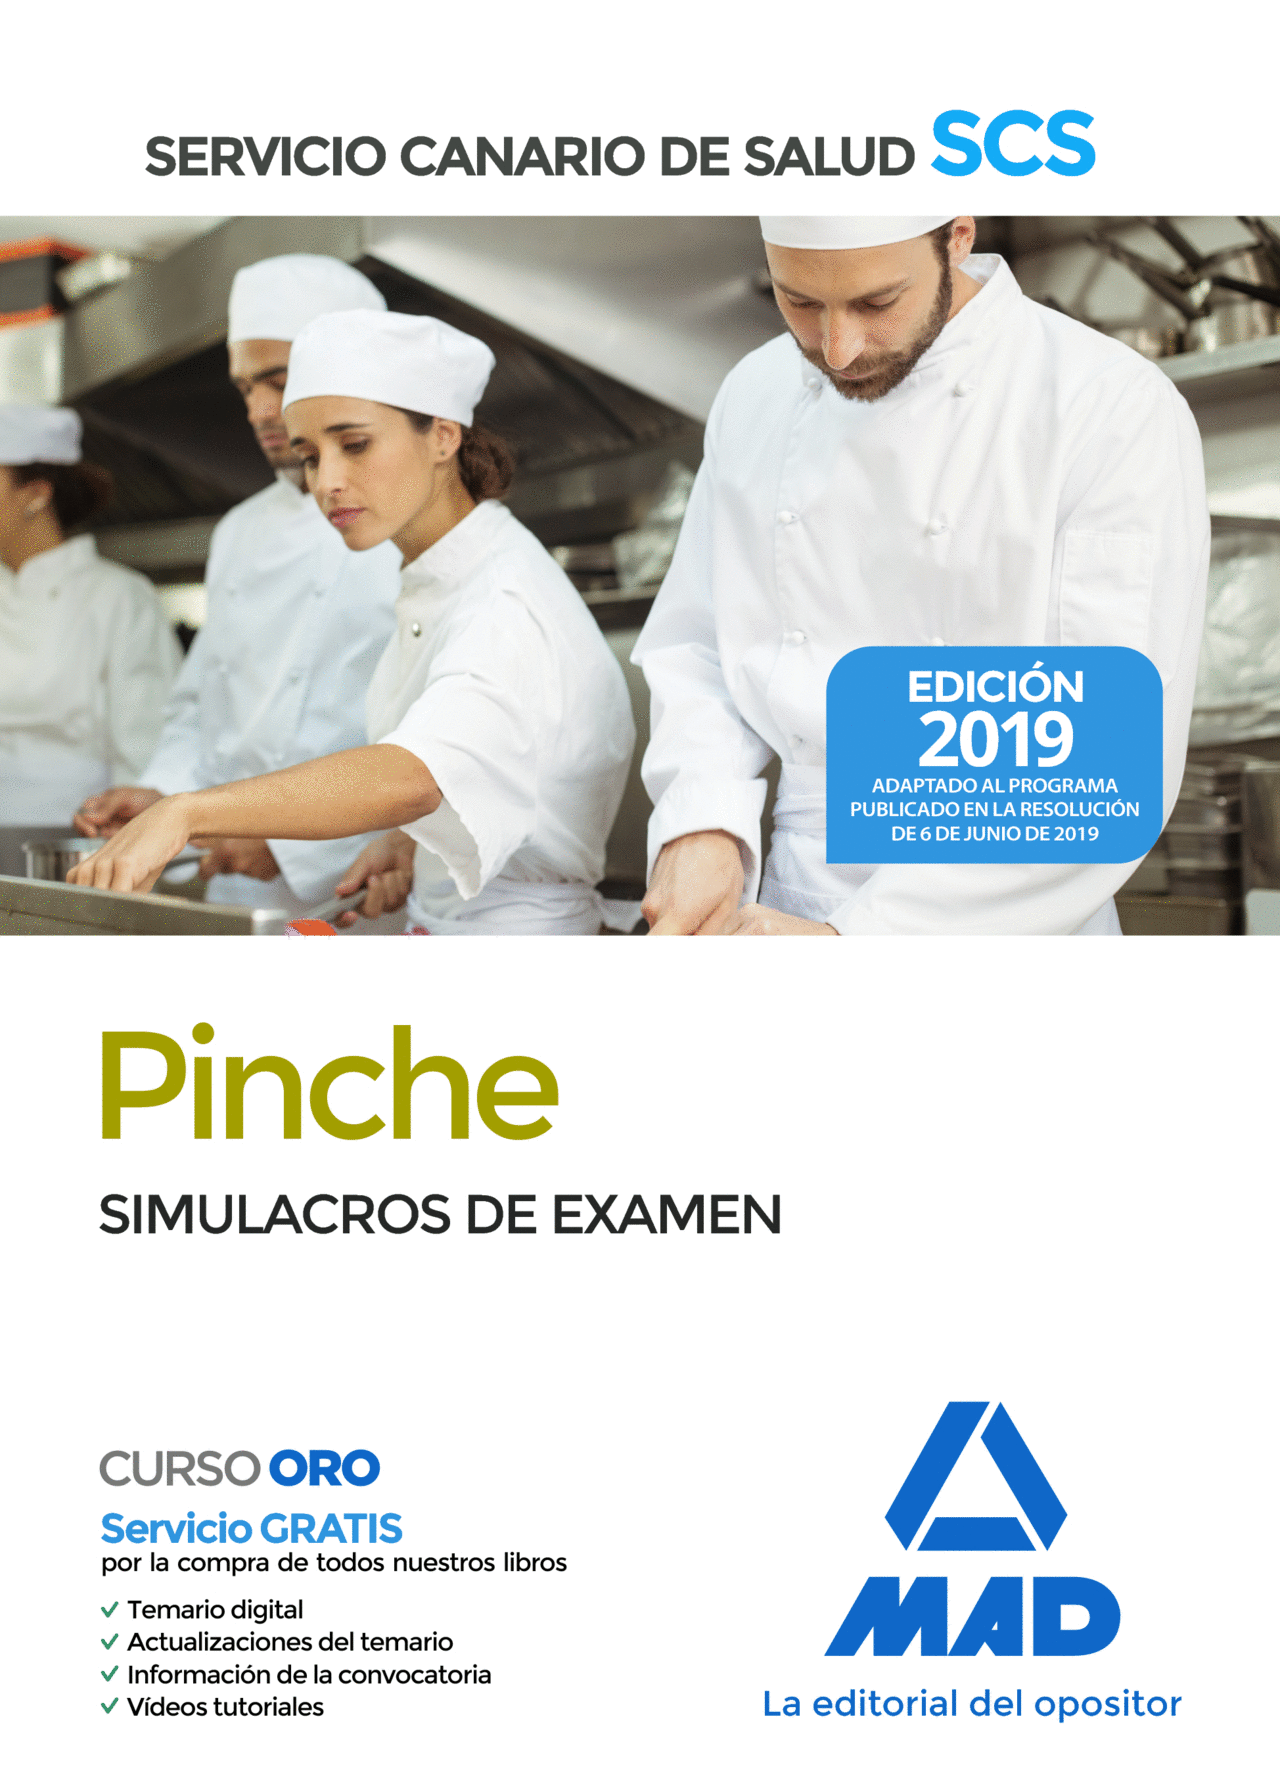 PINCHE DEL SERVICIO CANARIO DE SALUD. SIMULACROS DE EXAMEN